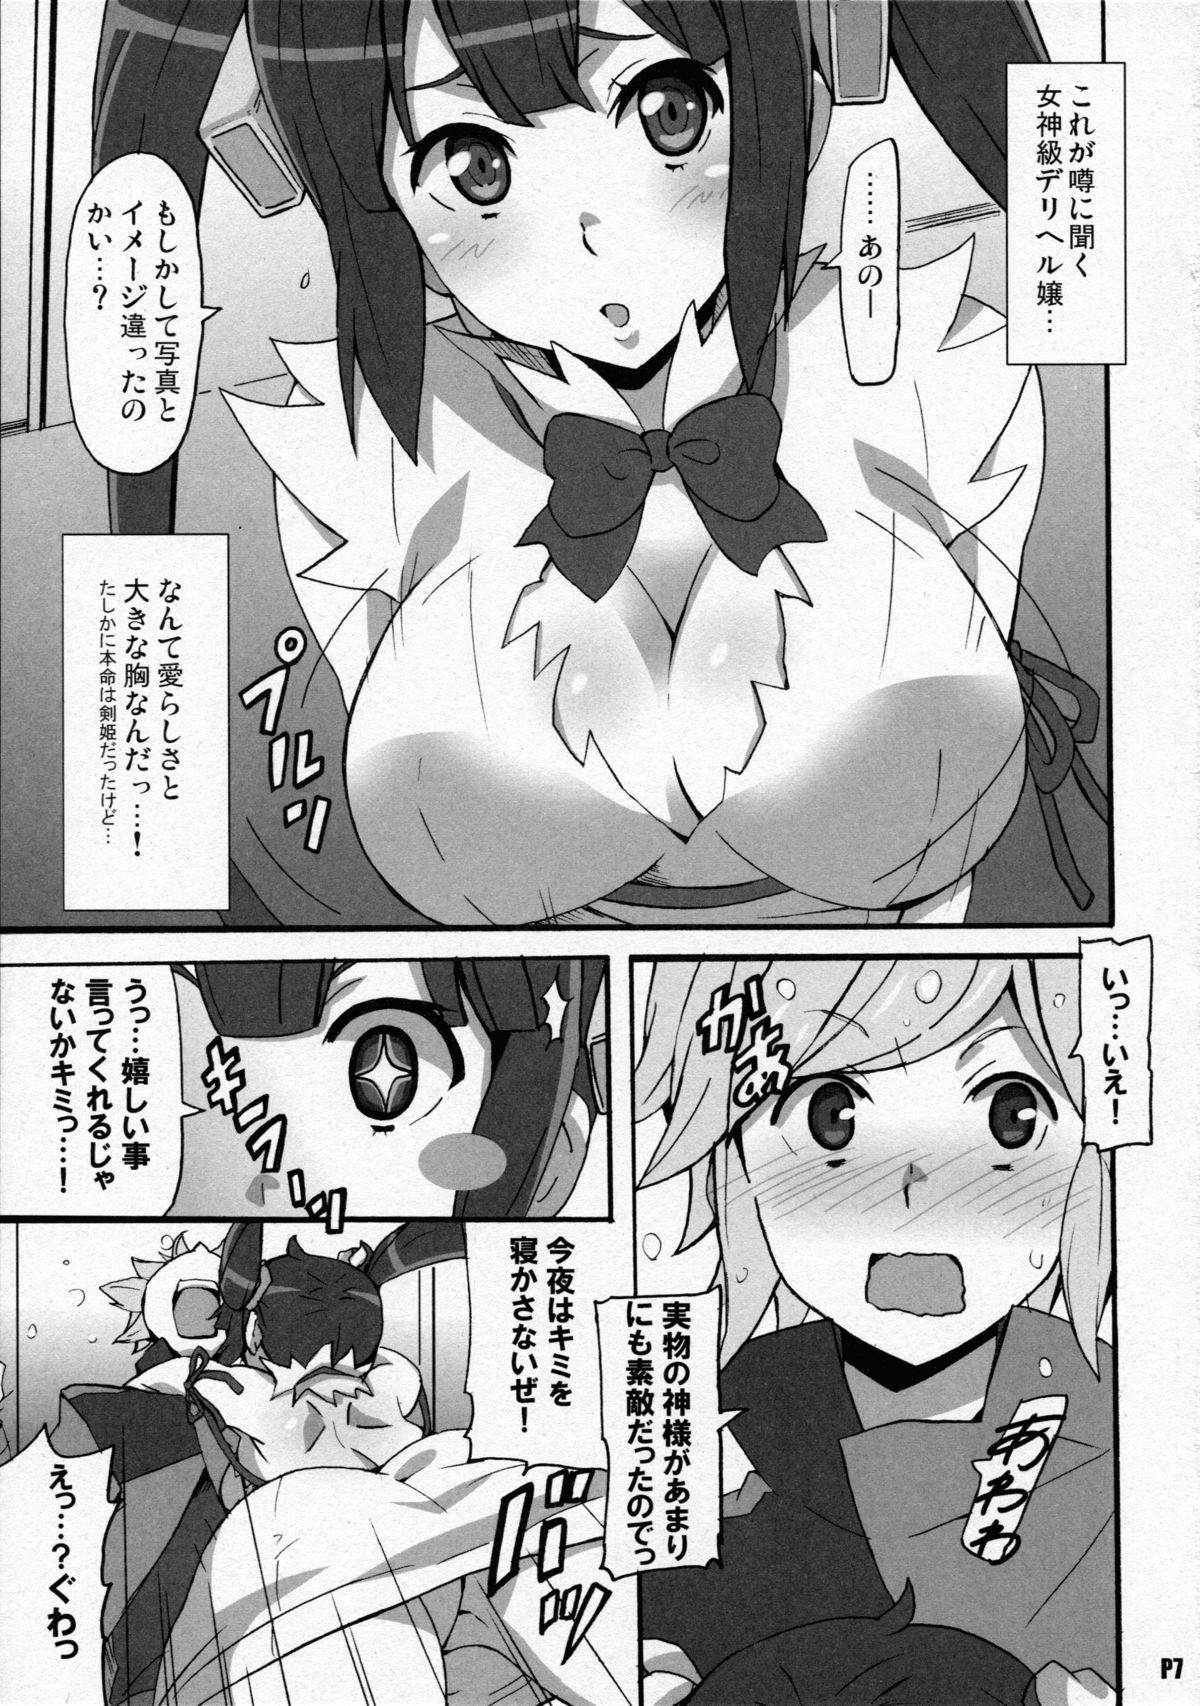 Orgasms Tokumei no Megami-tachi - Dungeon ni deai o motomeru no wa machigatteiru darou ka Amiga - Page 7